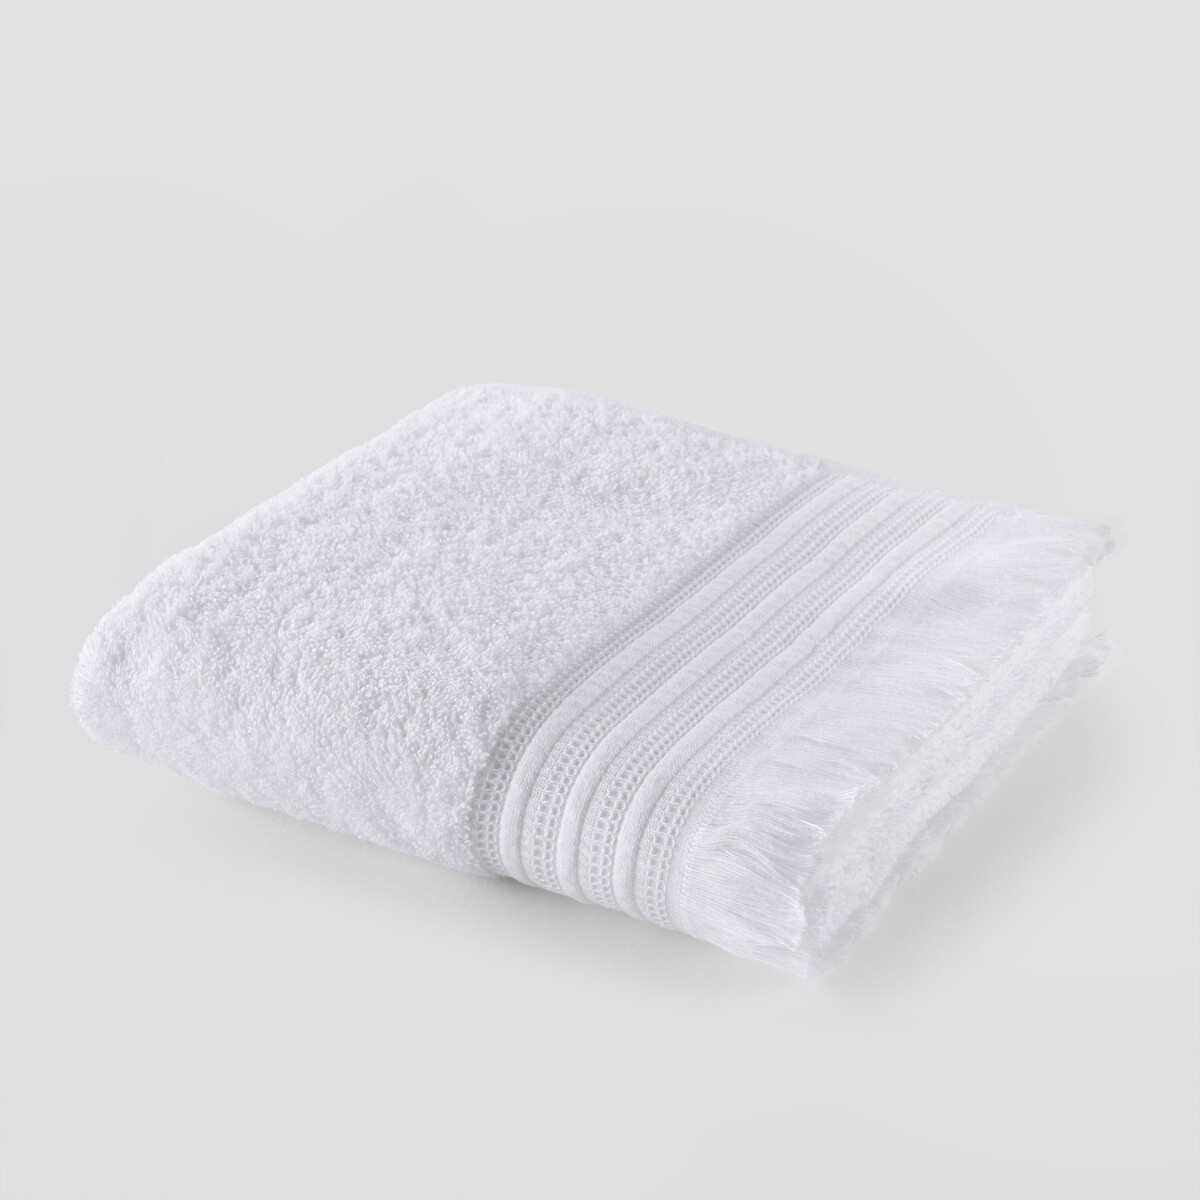 Полотенце LaRedoute Банное из махровой ткани 430г Cabourg 70 x 140 см белый, размер 70 x 140 см